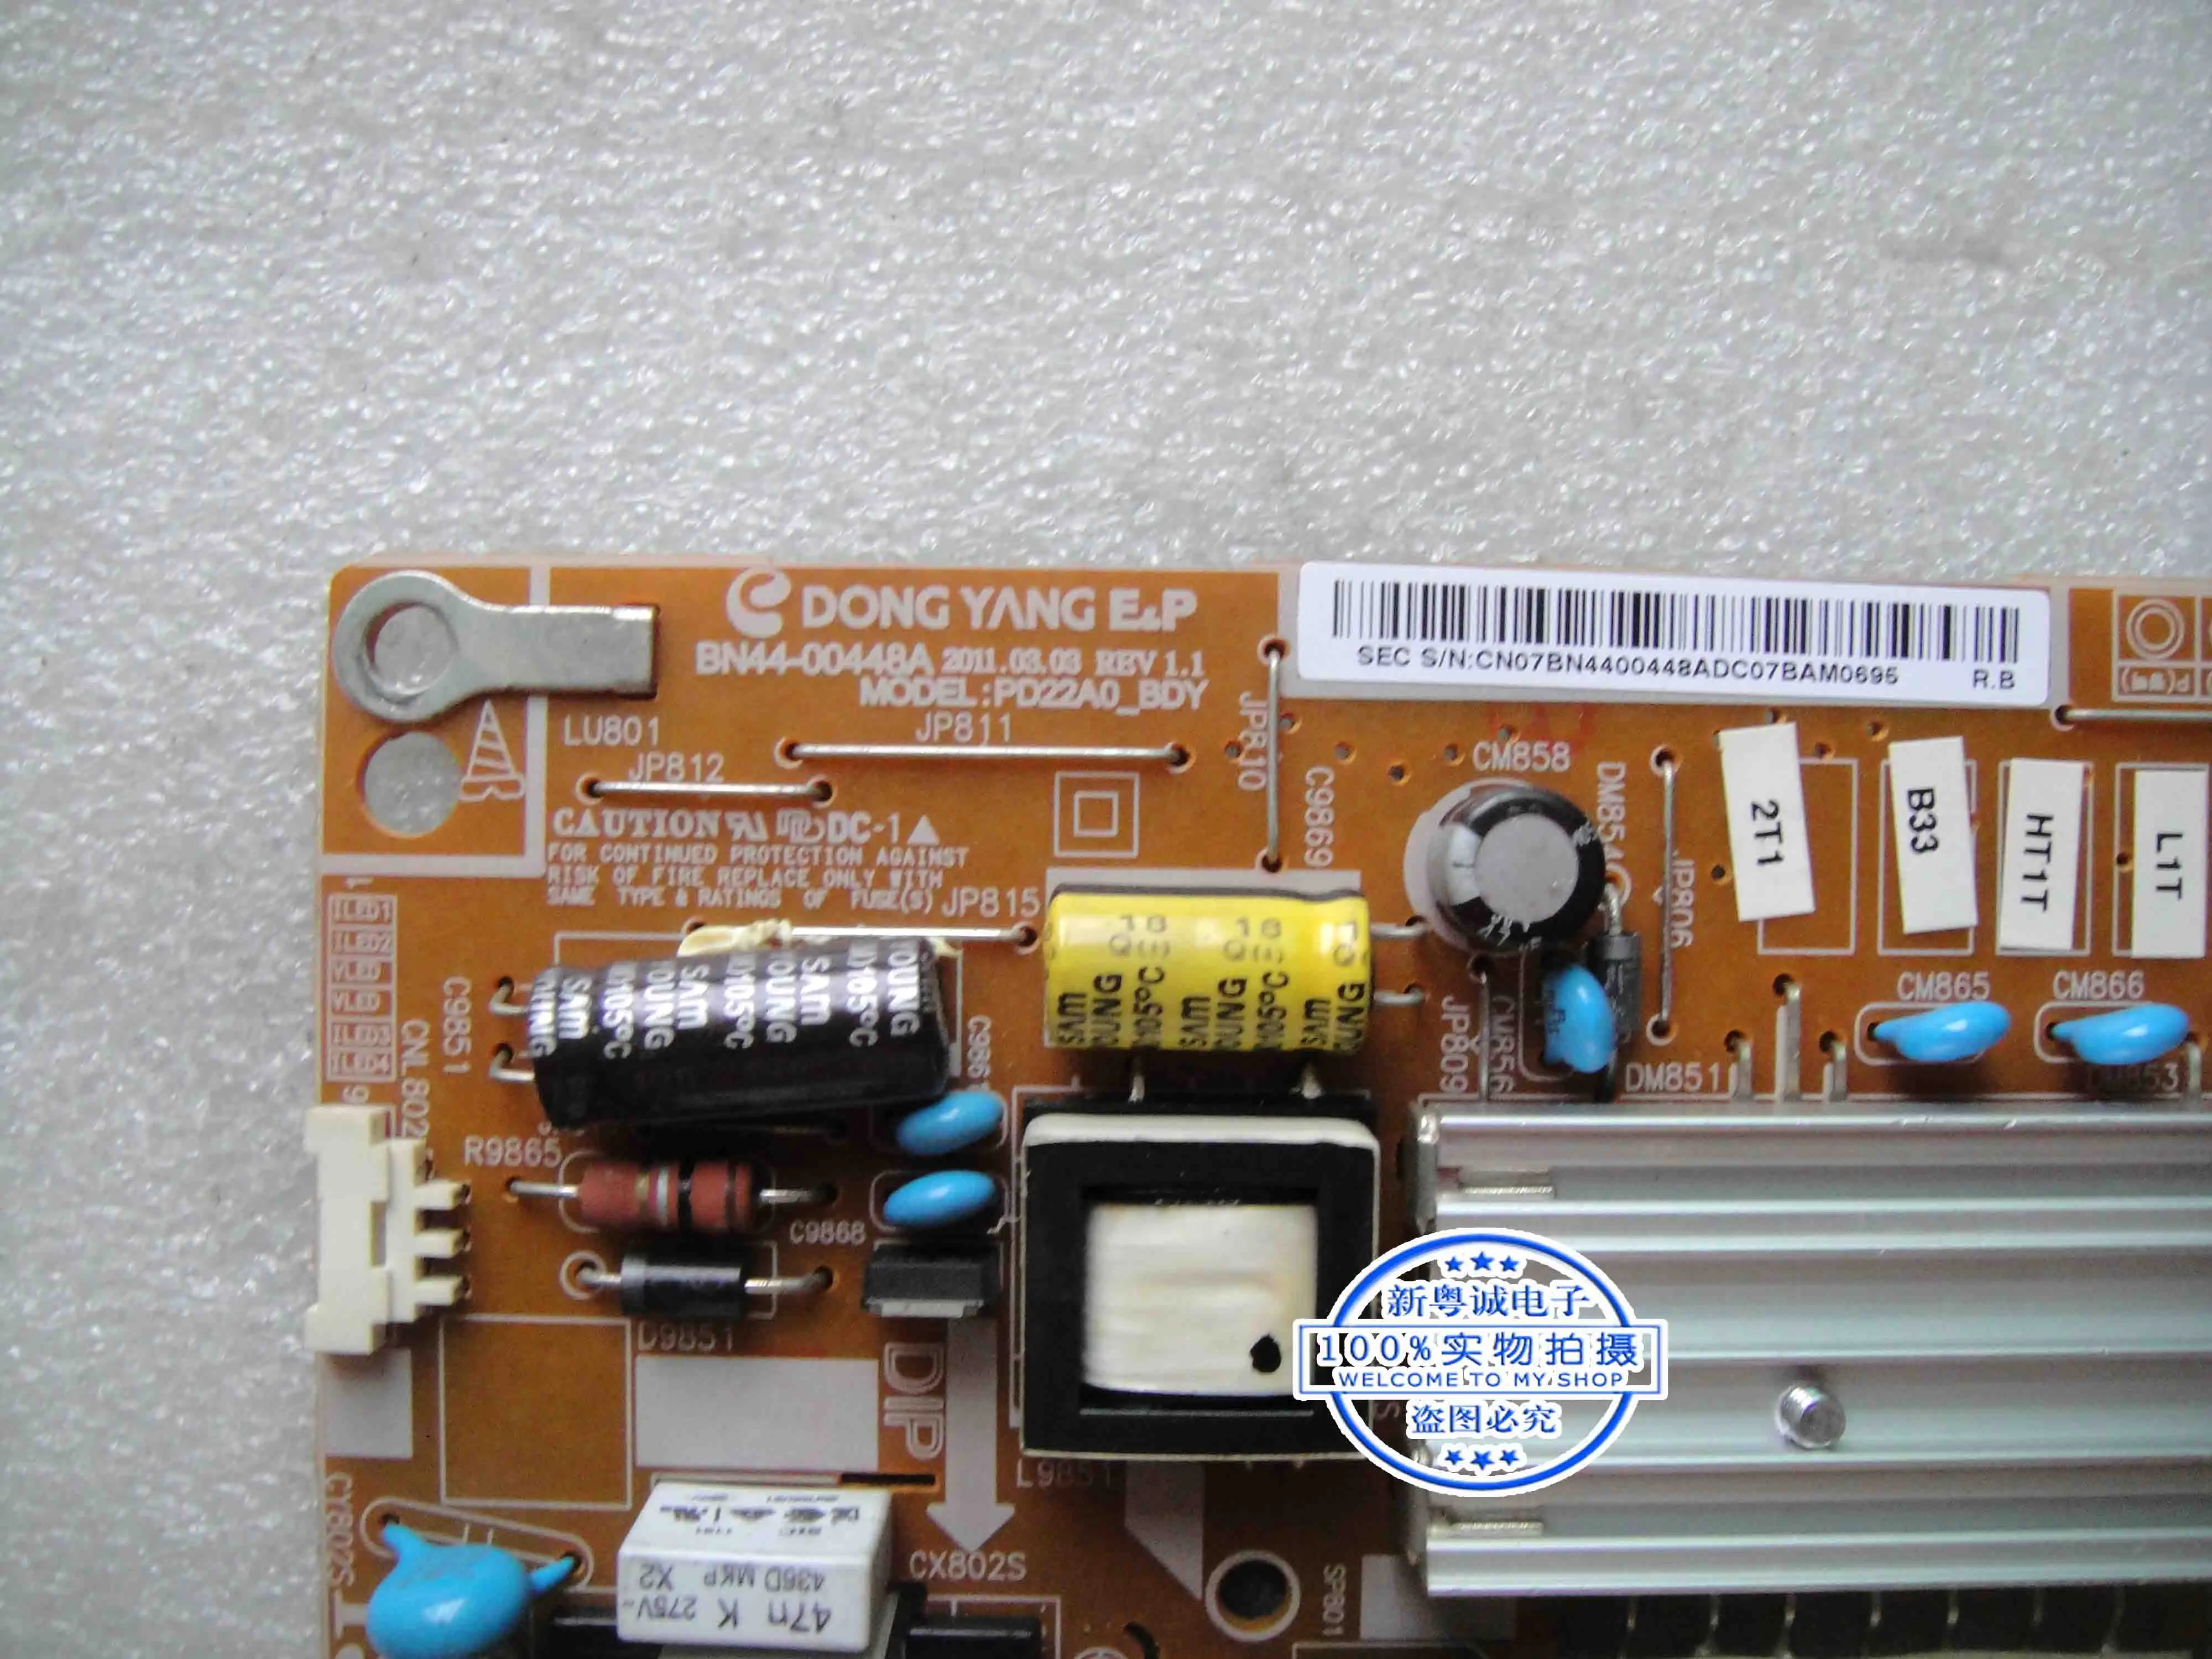 LT24A350AR/XF power board BN44-00448A PD22A0_BDY high pressure board